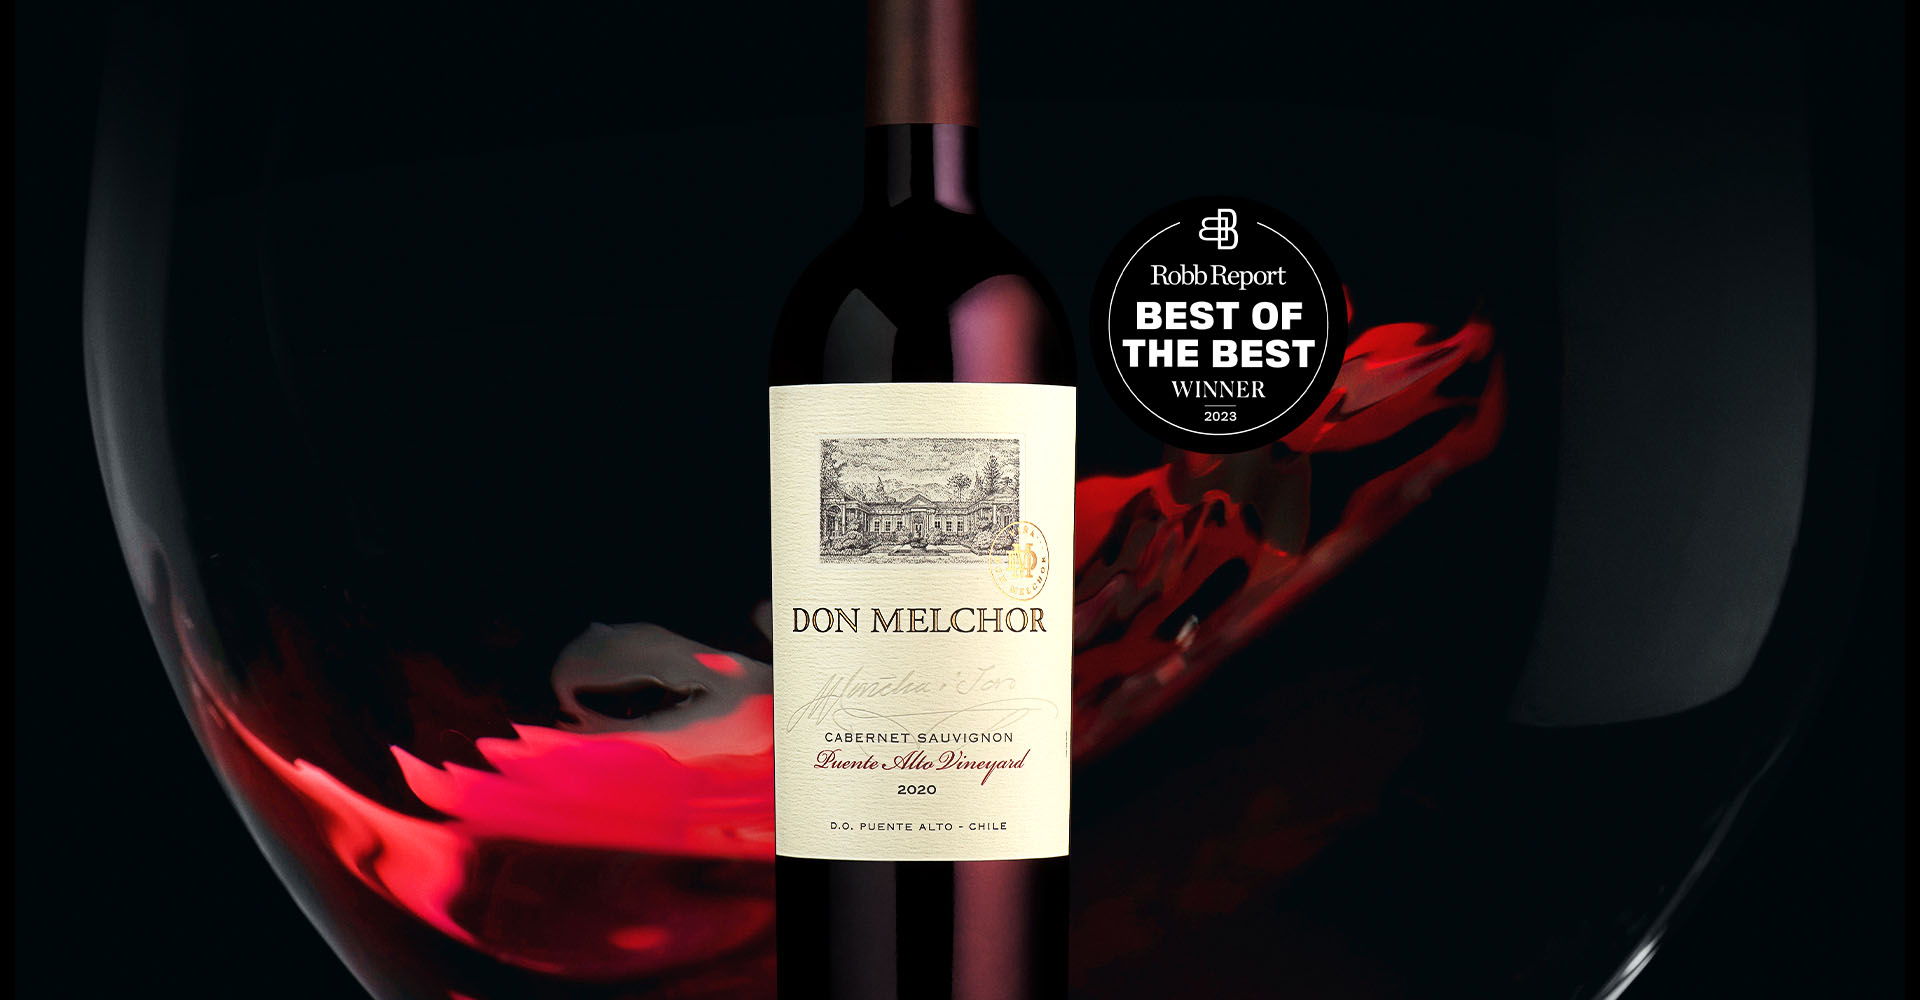 Don Melchor 2020 nombrado único vino chileno en los “Best of the Best Wines of the World” de Robb Report